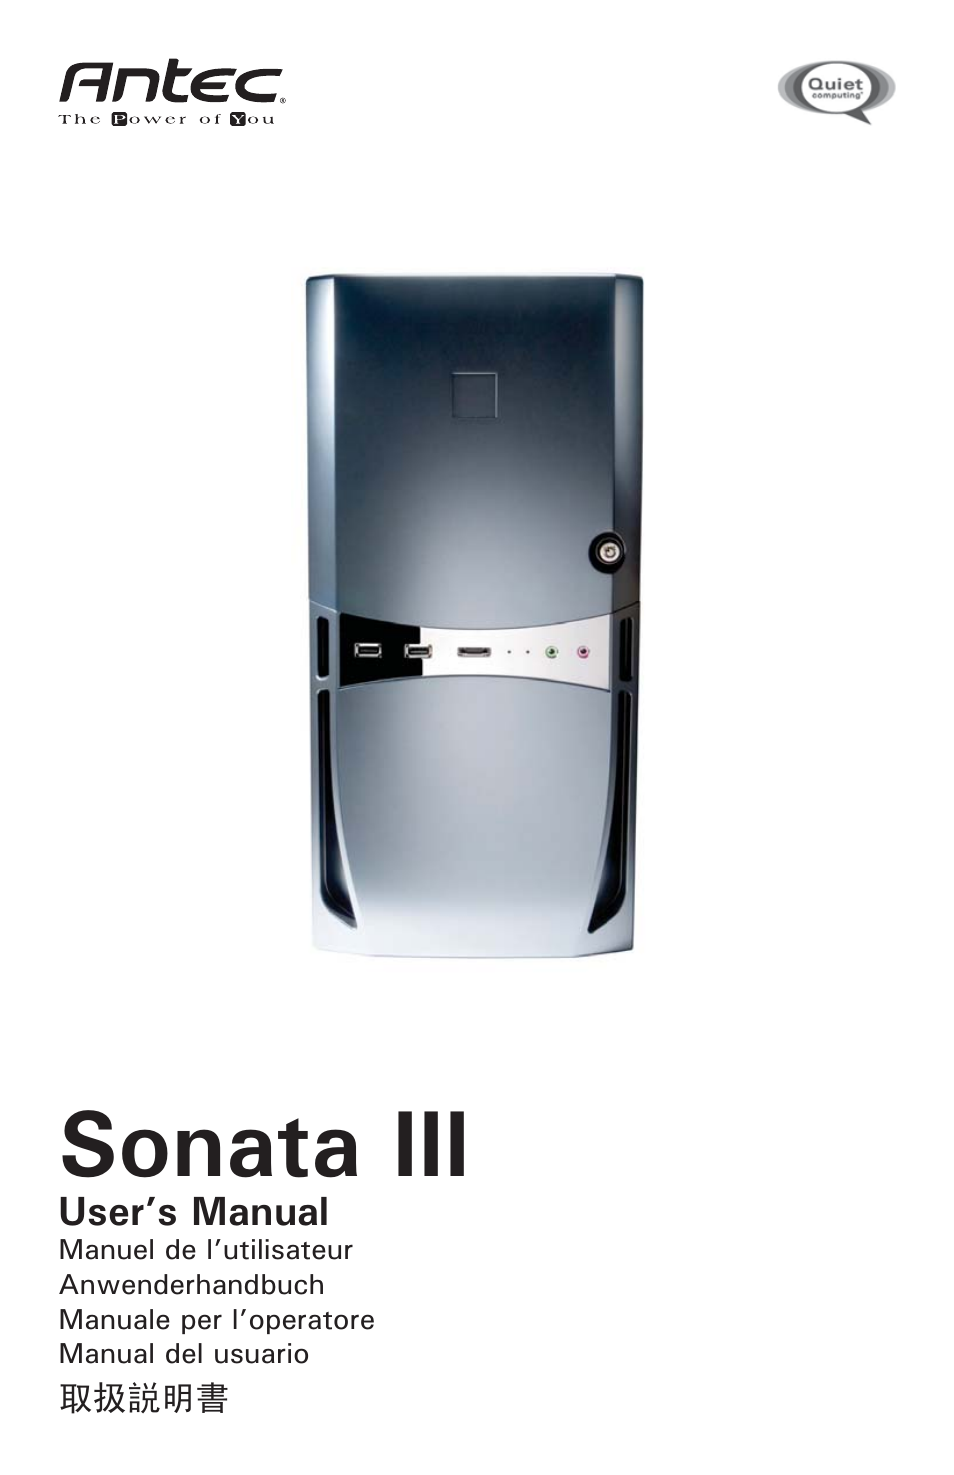 Sonata II 500